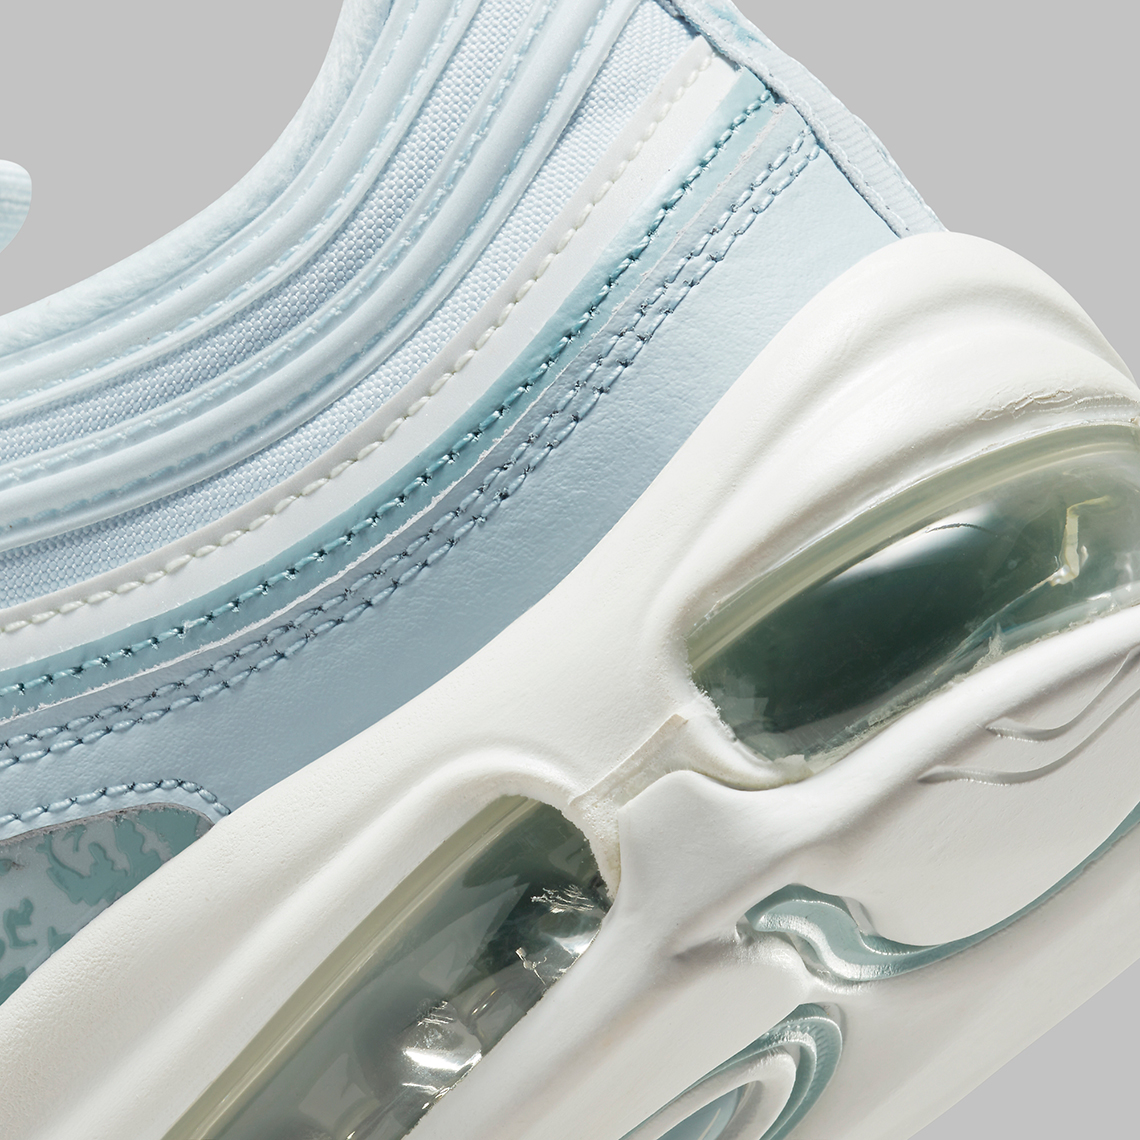 Nike Air Max 97 Blue Camo Dj5434 400 Release Date 3